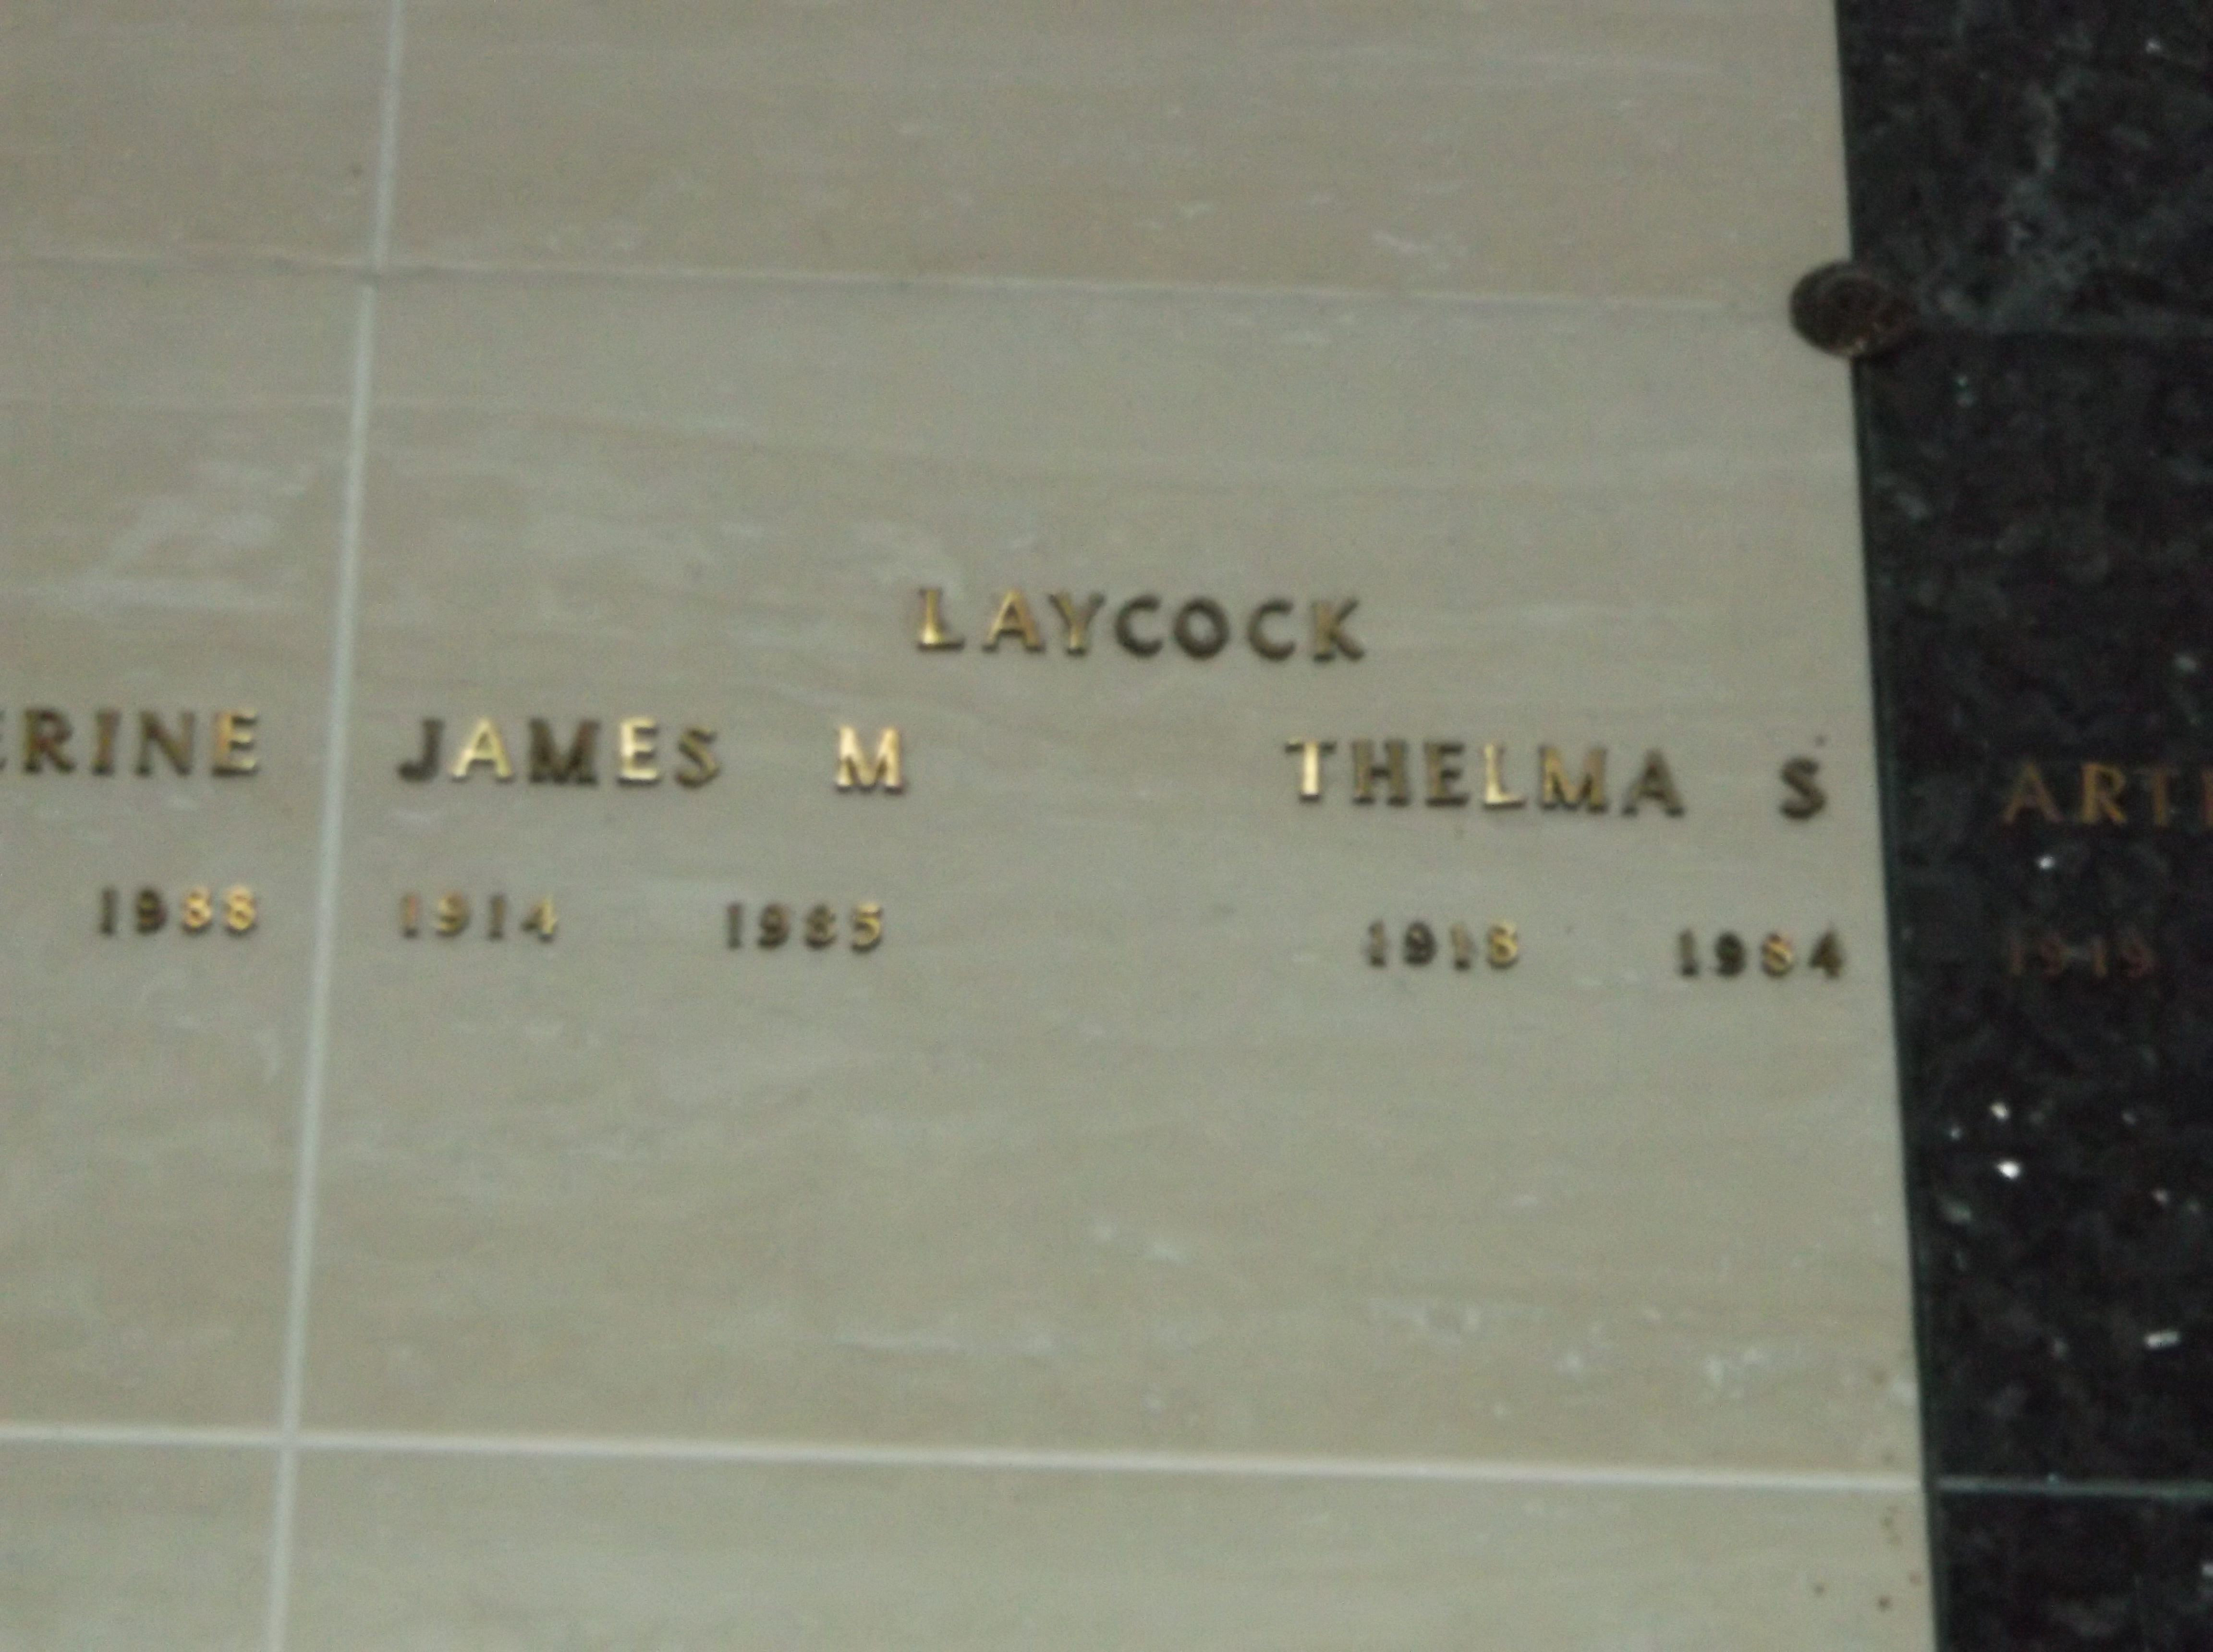 James M Laycock